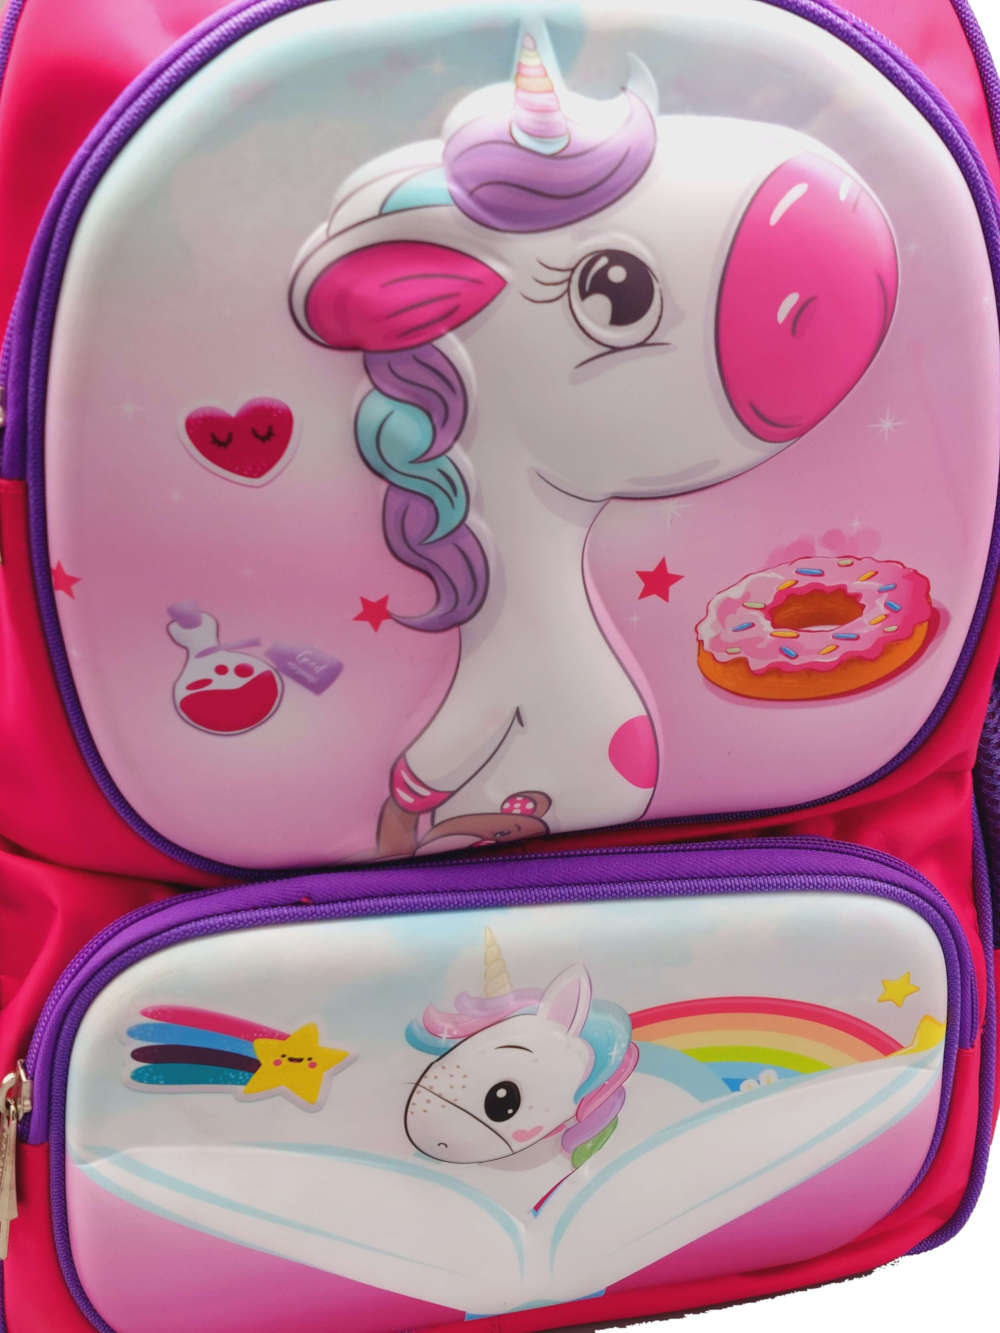 Personalized Kids Unicorn Luggage by Stephen Joseph